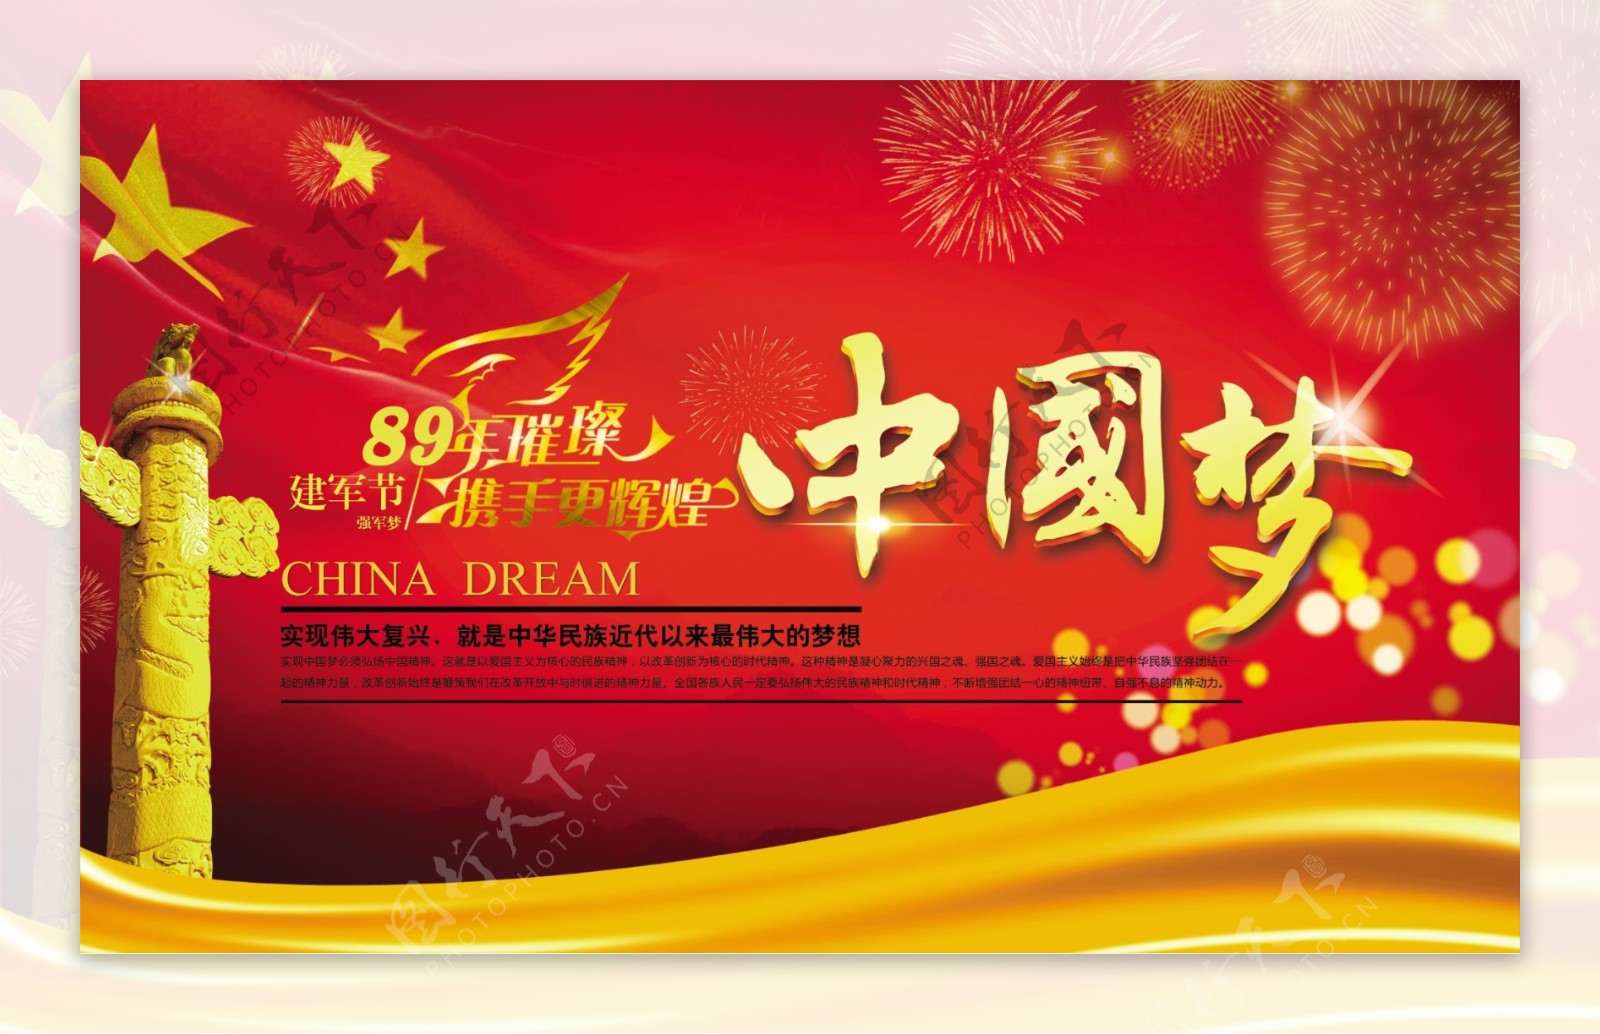 建军节89周年庆中国梦海报